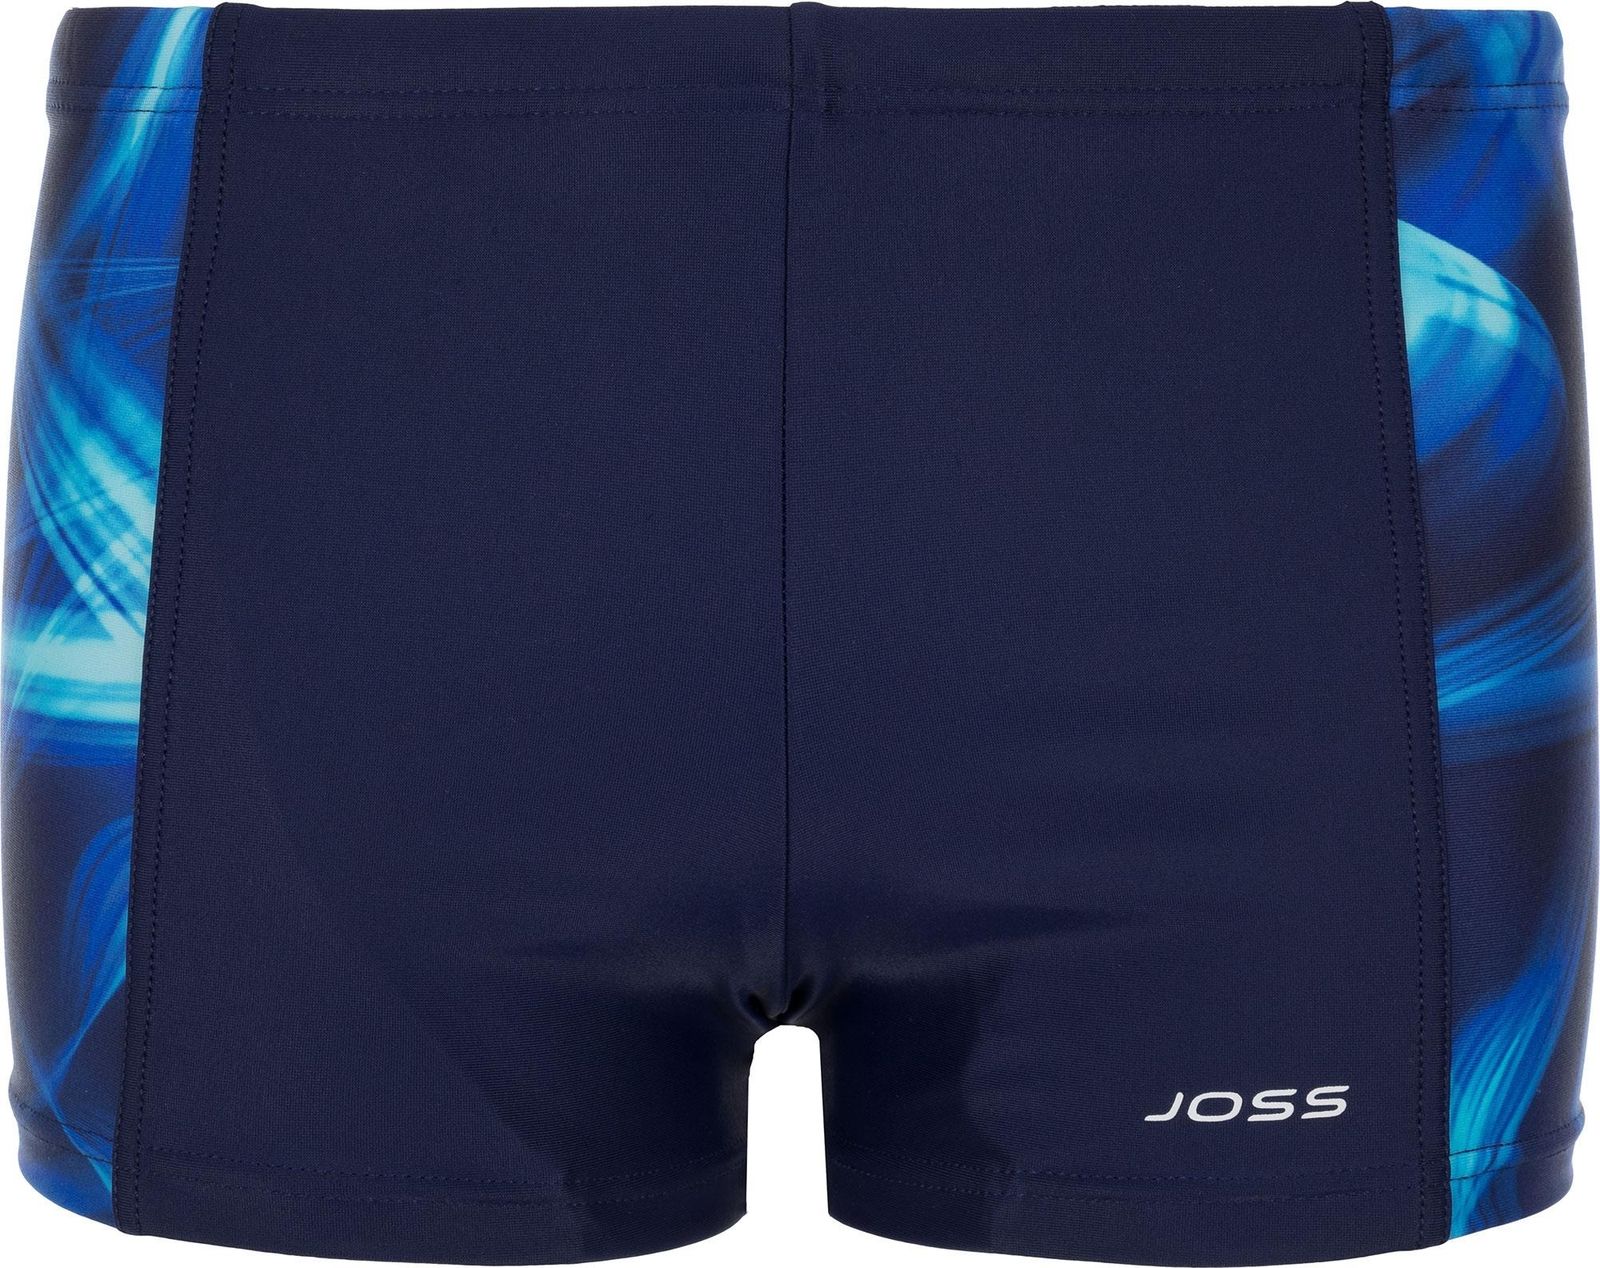    Joss Boys' Swim Trunks, : , . BSX04S6-MQ.  140